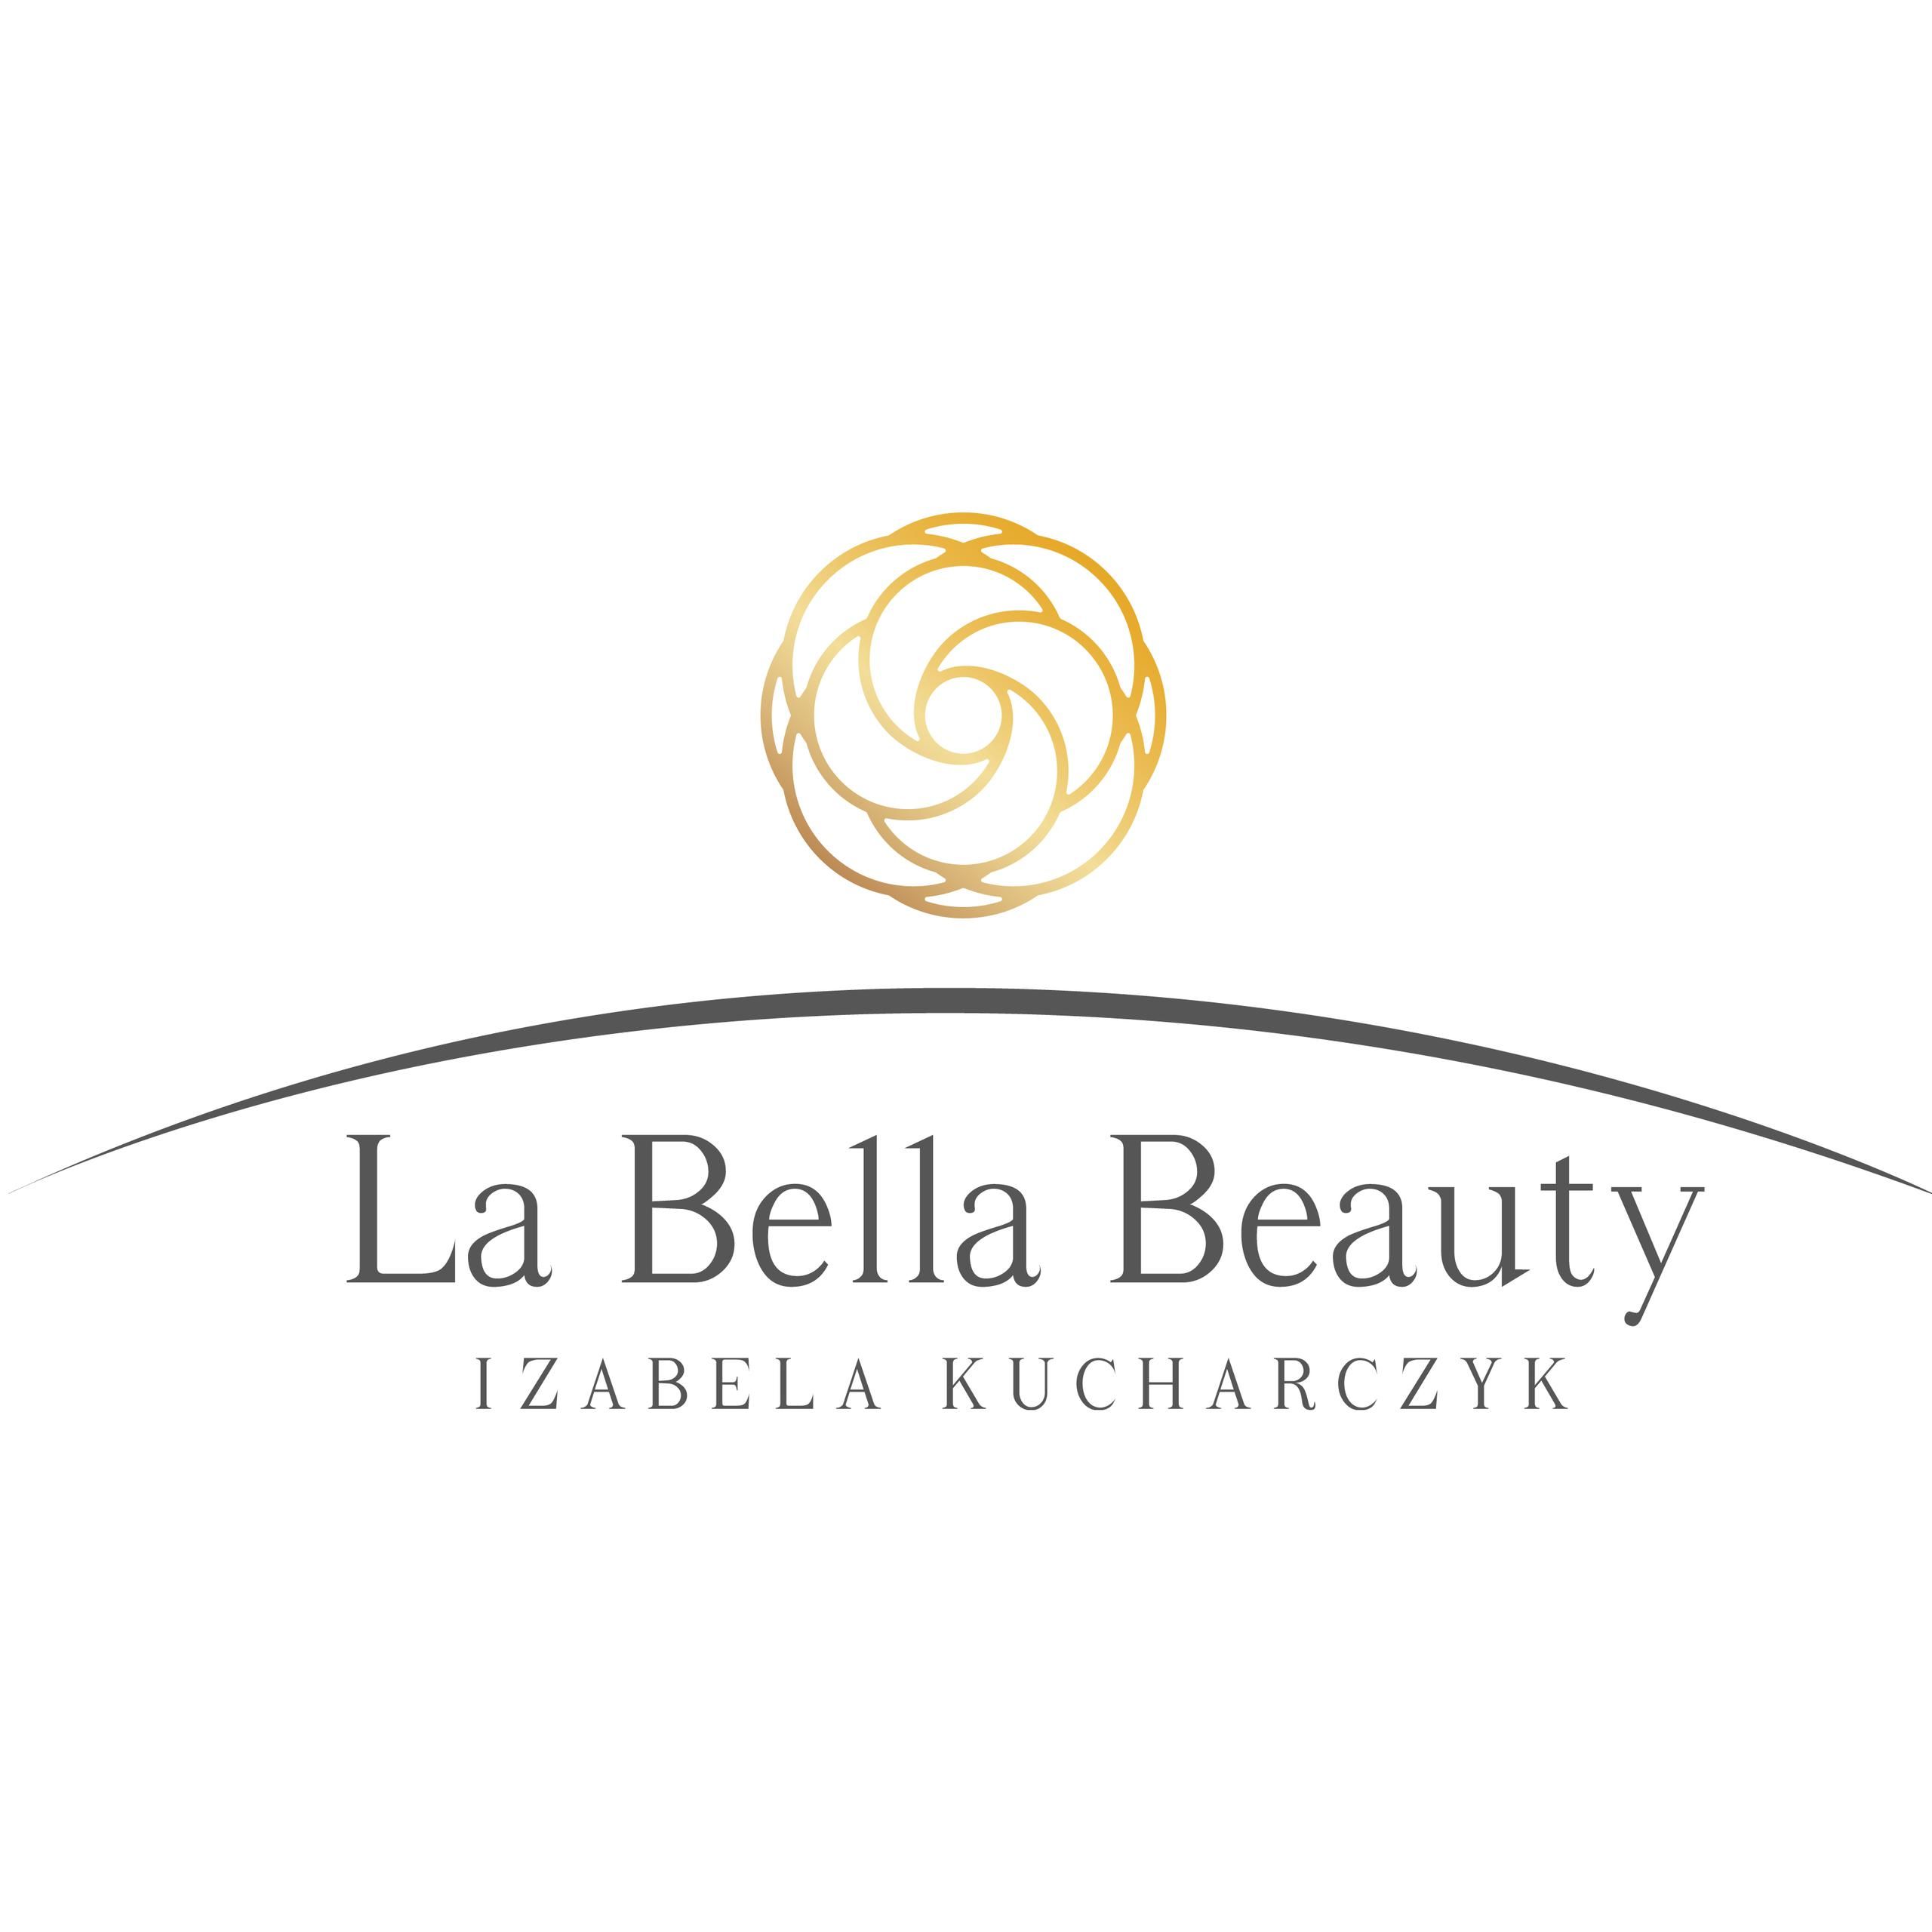 La Bella Beauty Izabela Kucharczyk, ul.Kłodna 30, 70-535, Szczecin